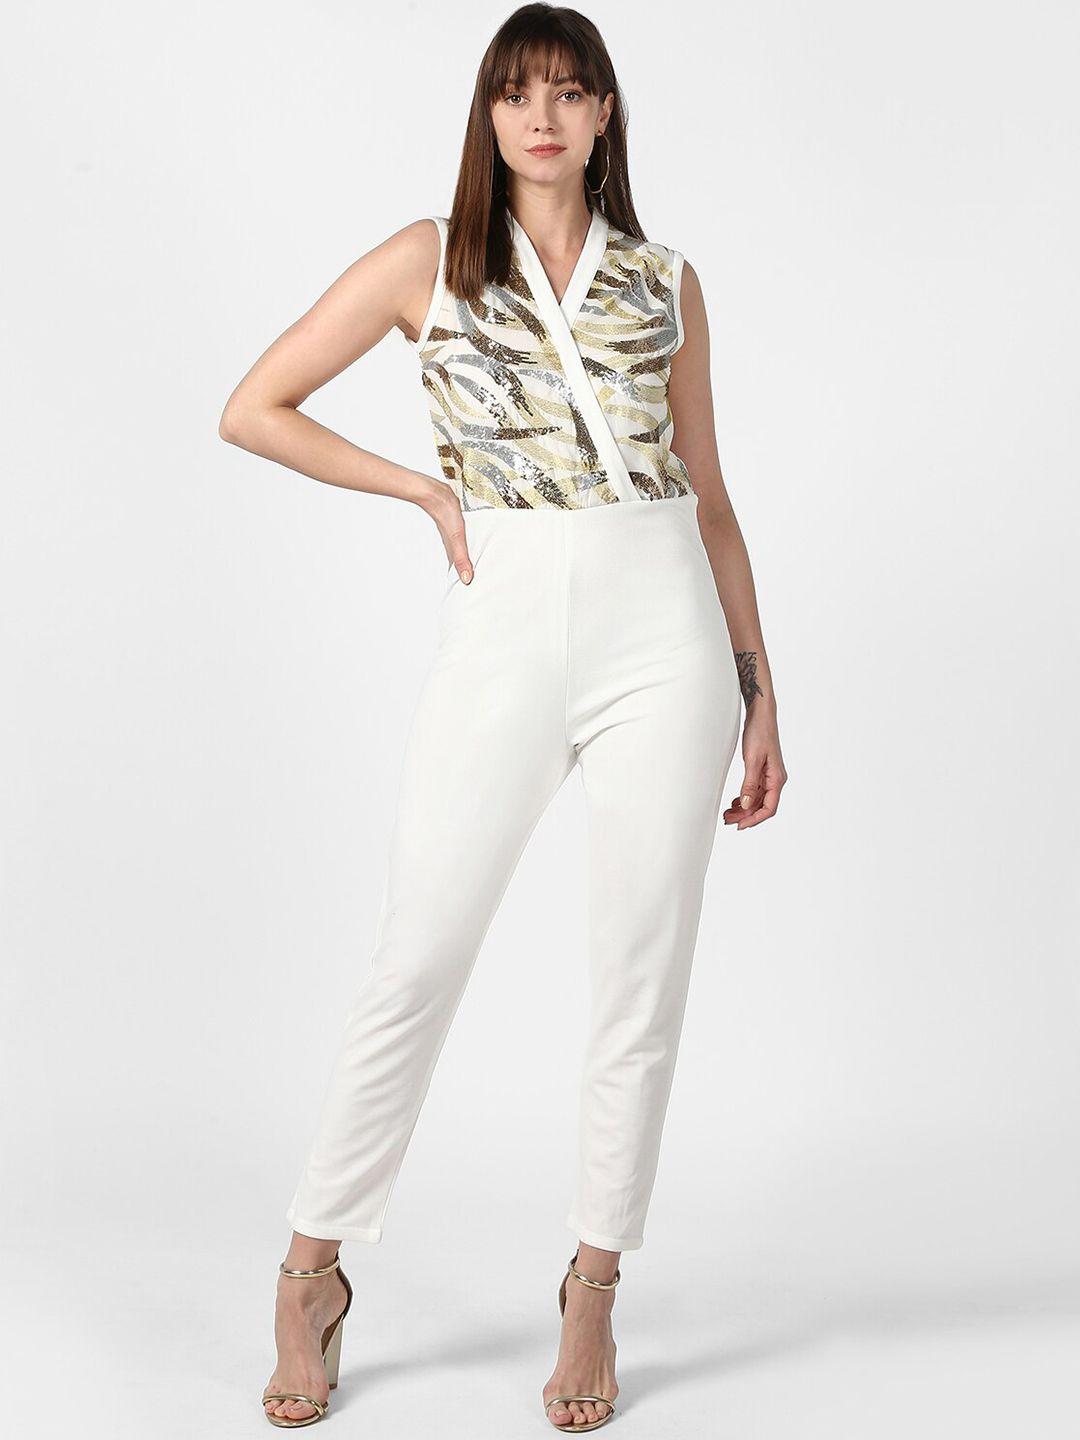 stylestone white basic jumpsuit with embellished